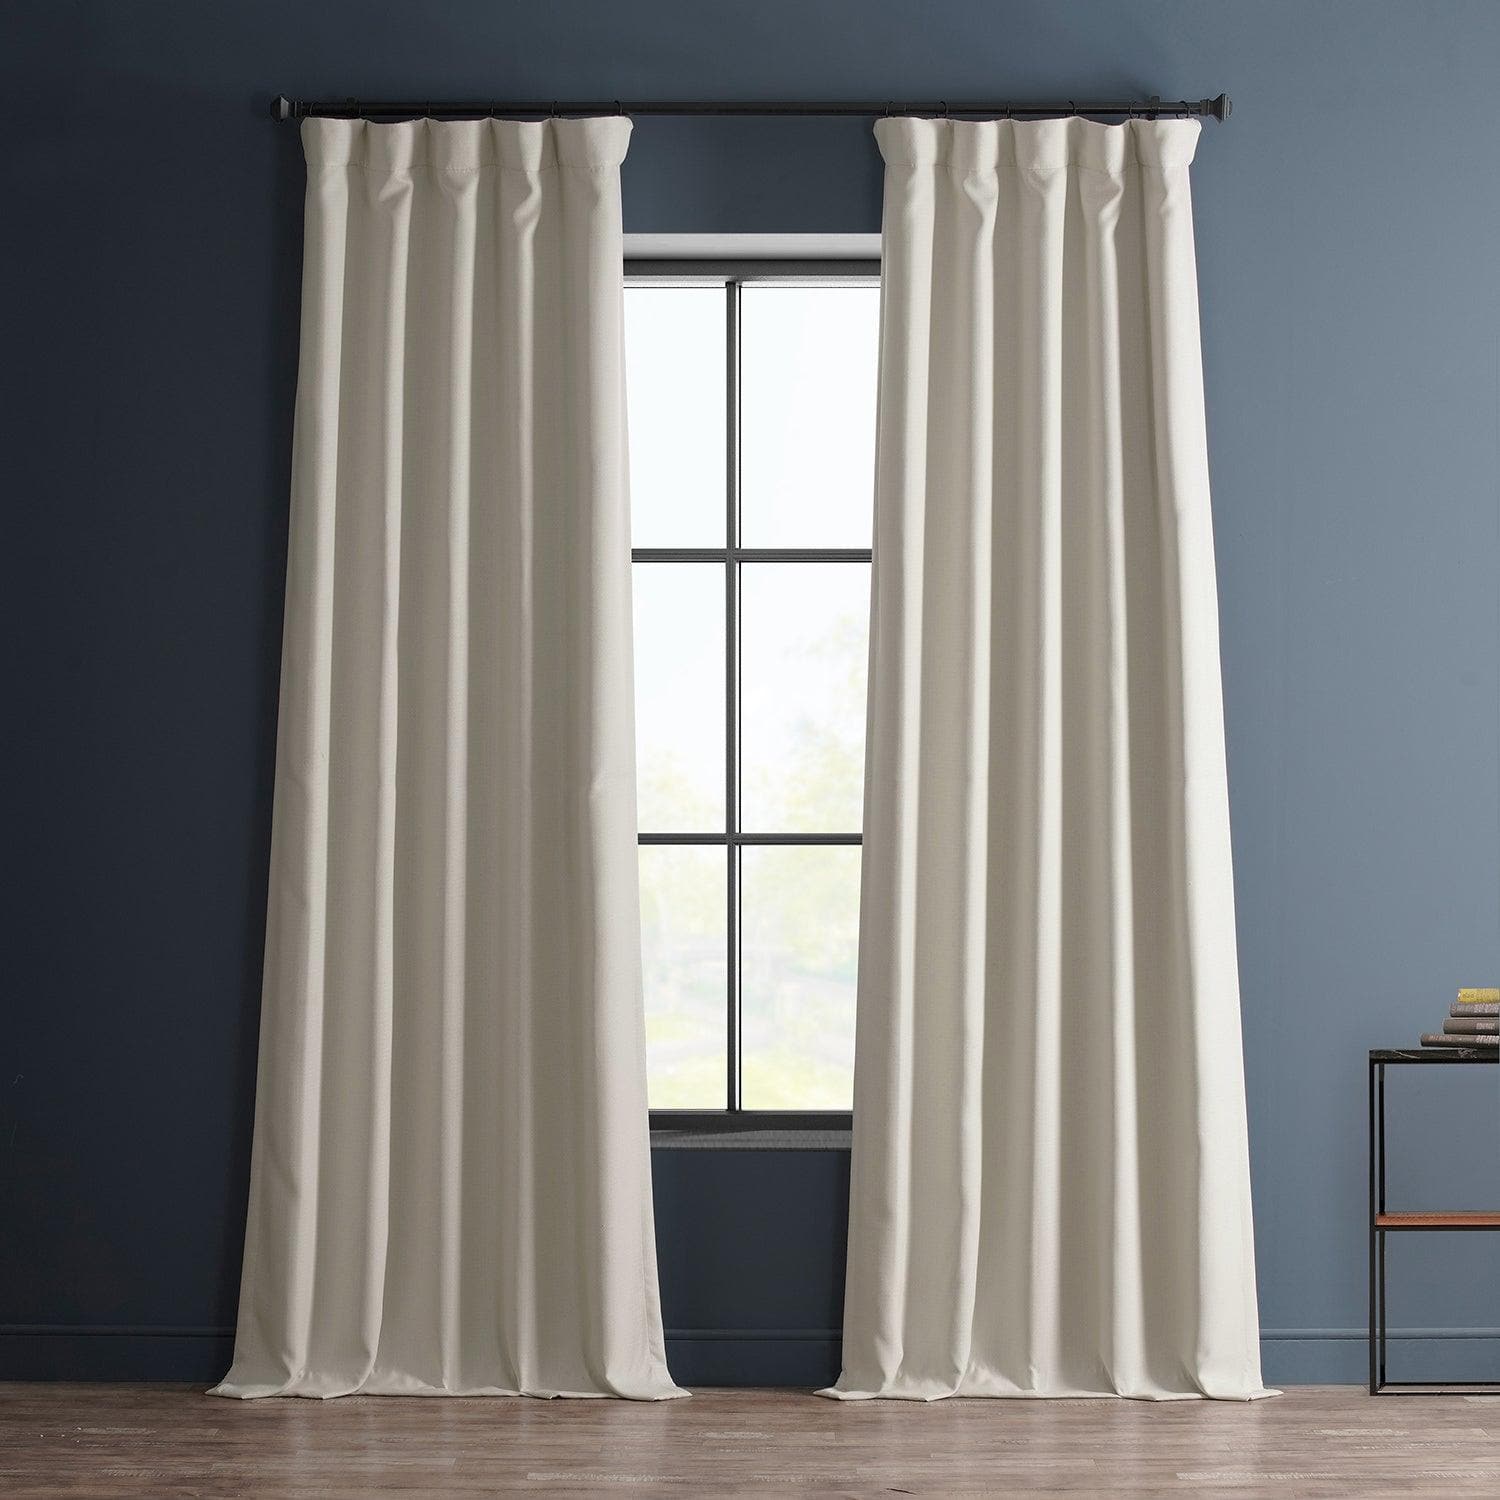 Birch Textured Faux Linen Room Darkening Curtain